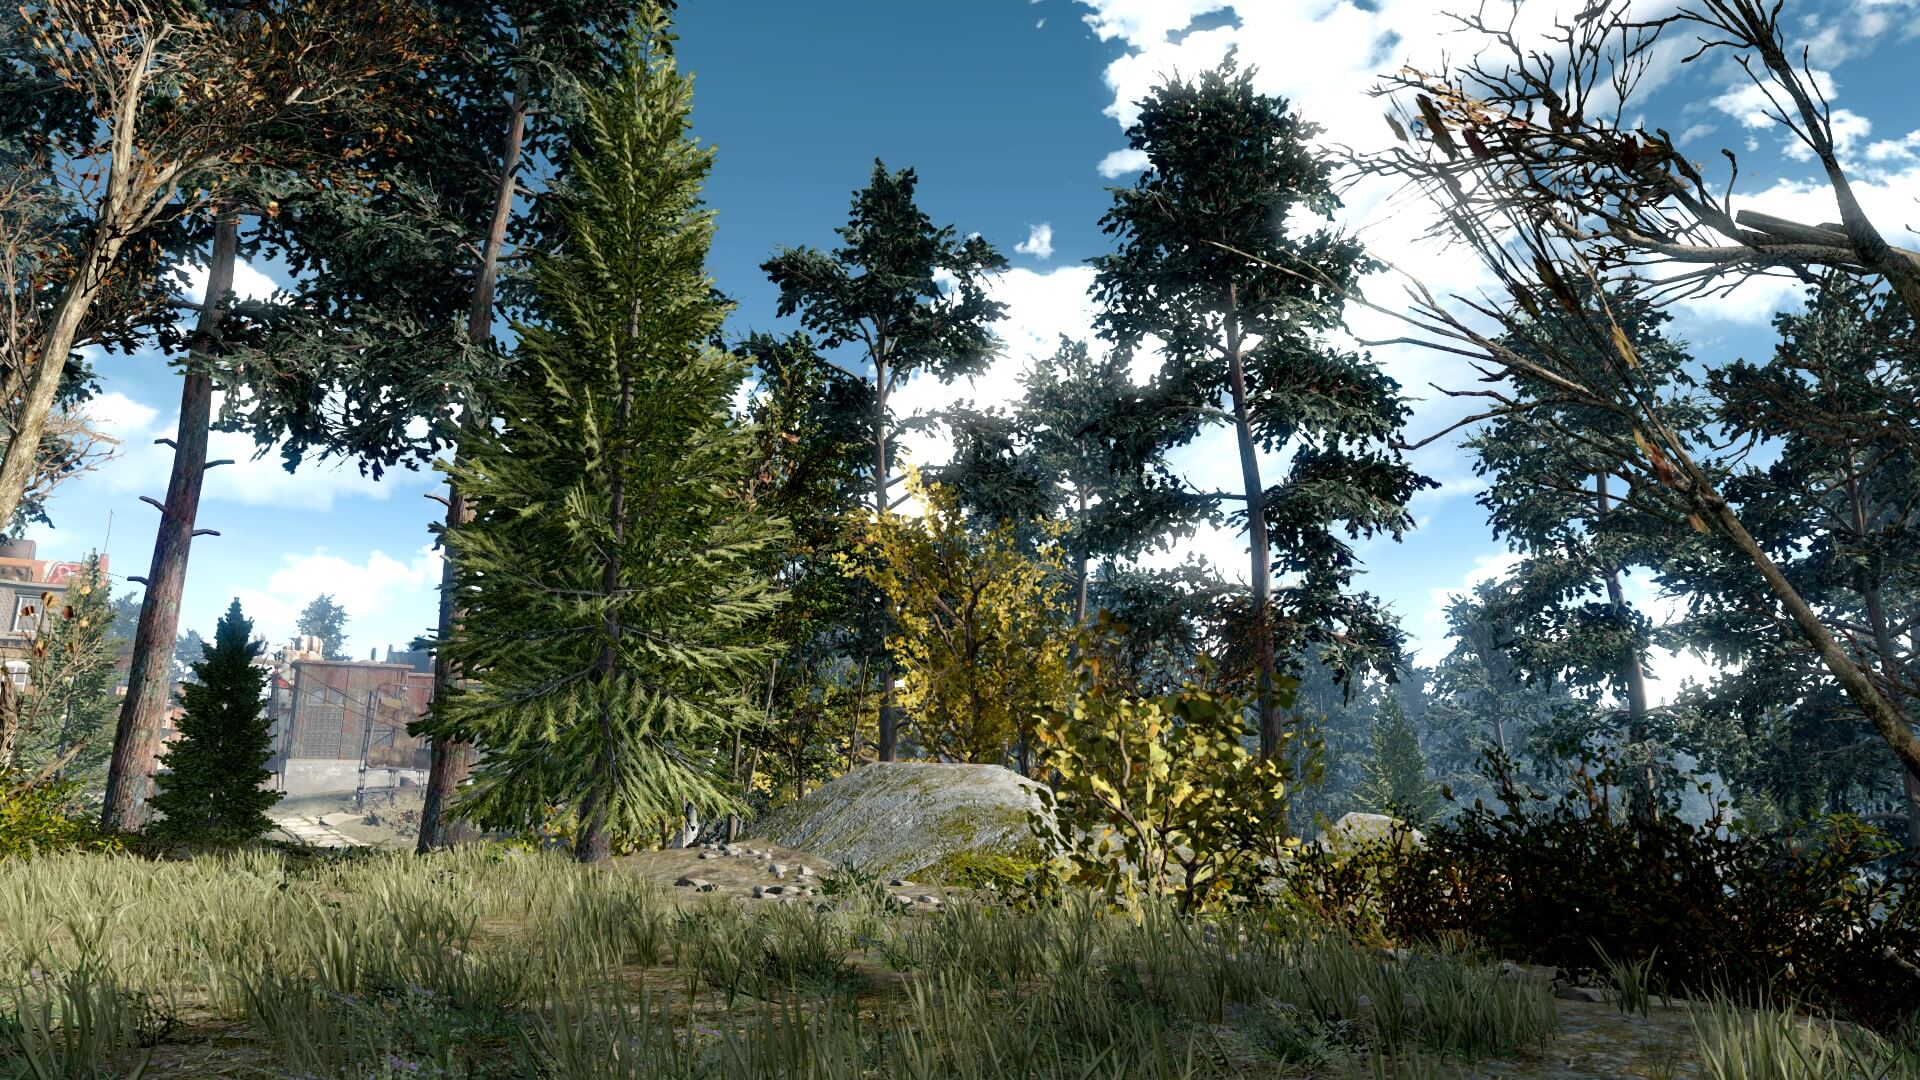 绿意盎然 《辐射4》森林MOD为游戏添加18000棵树木